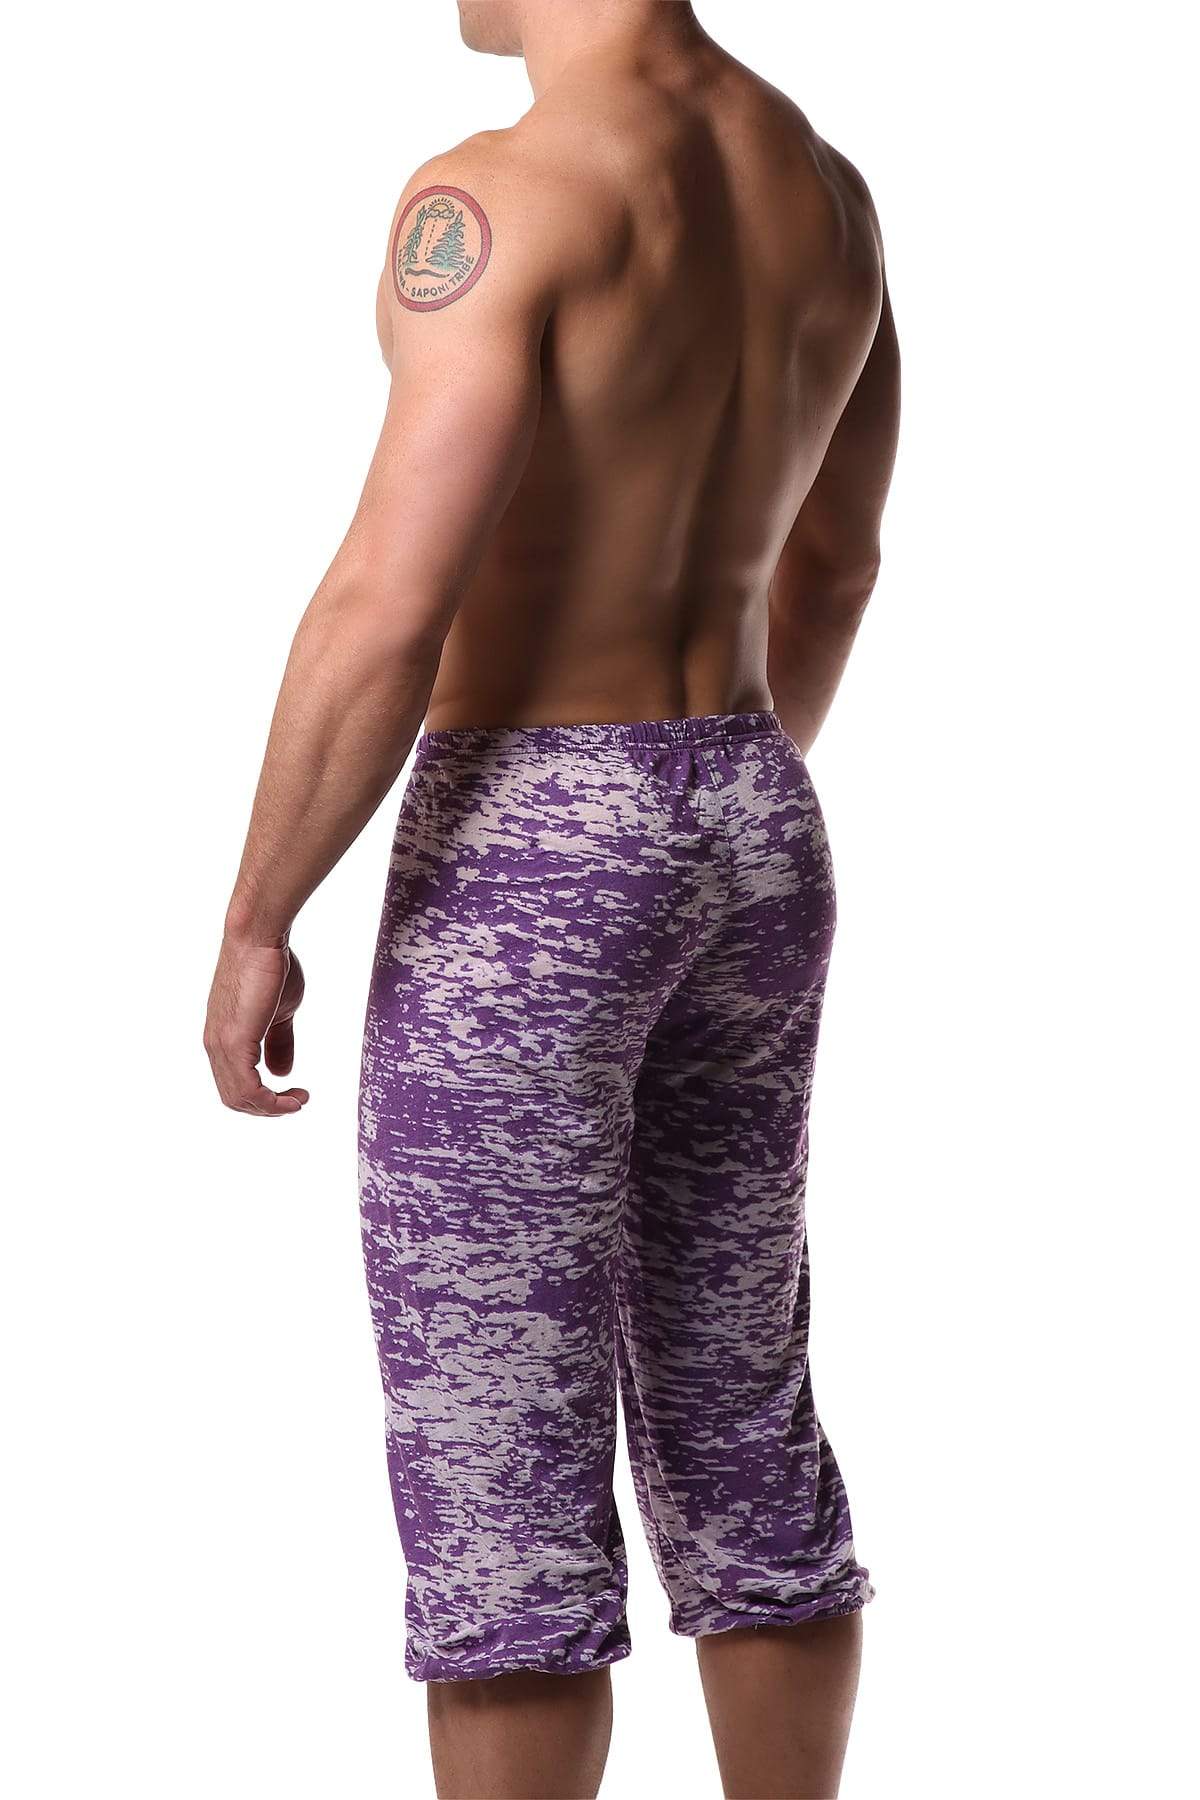 Y.M.L.A. Purple Burnout Yoga Pant